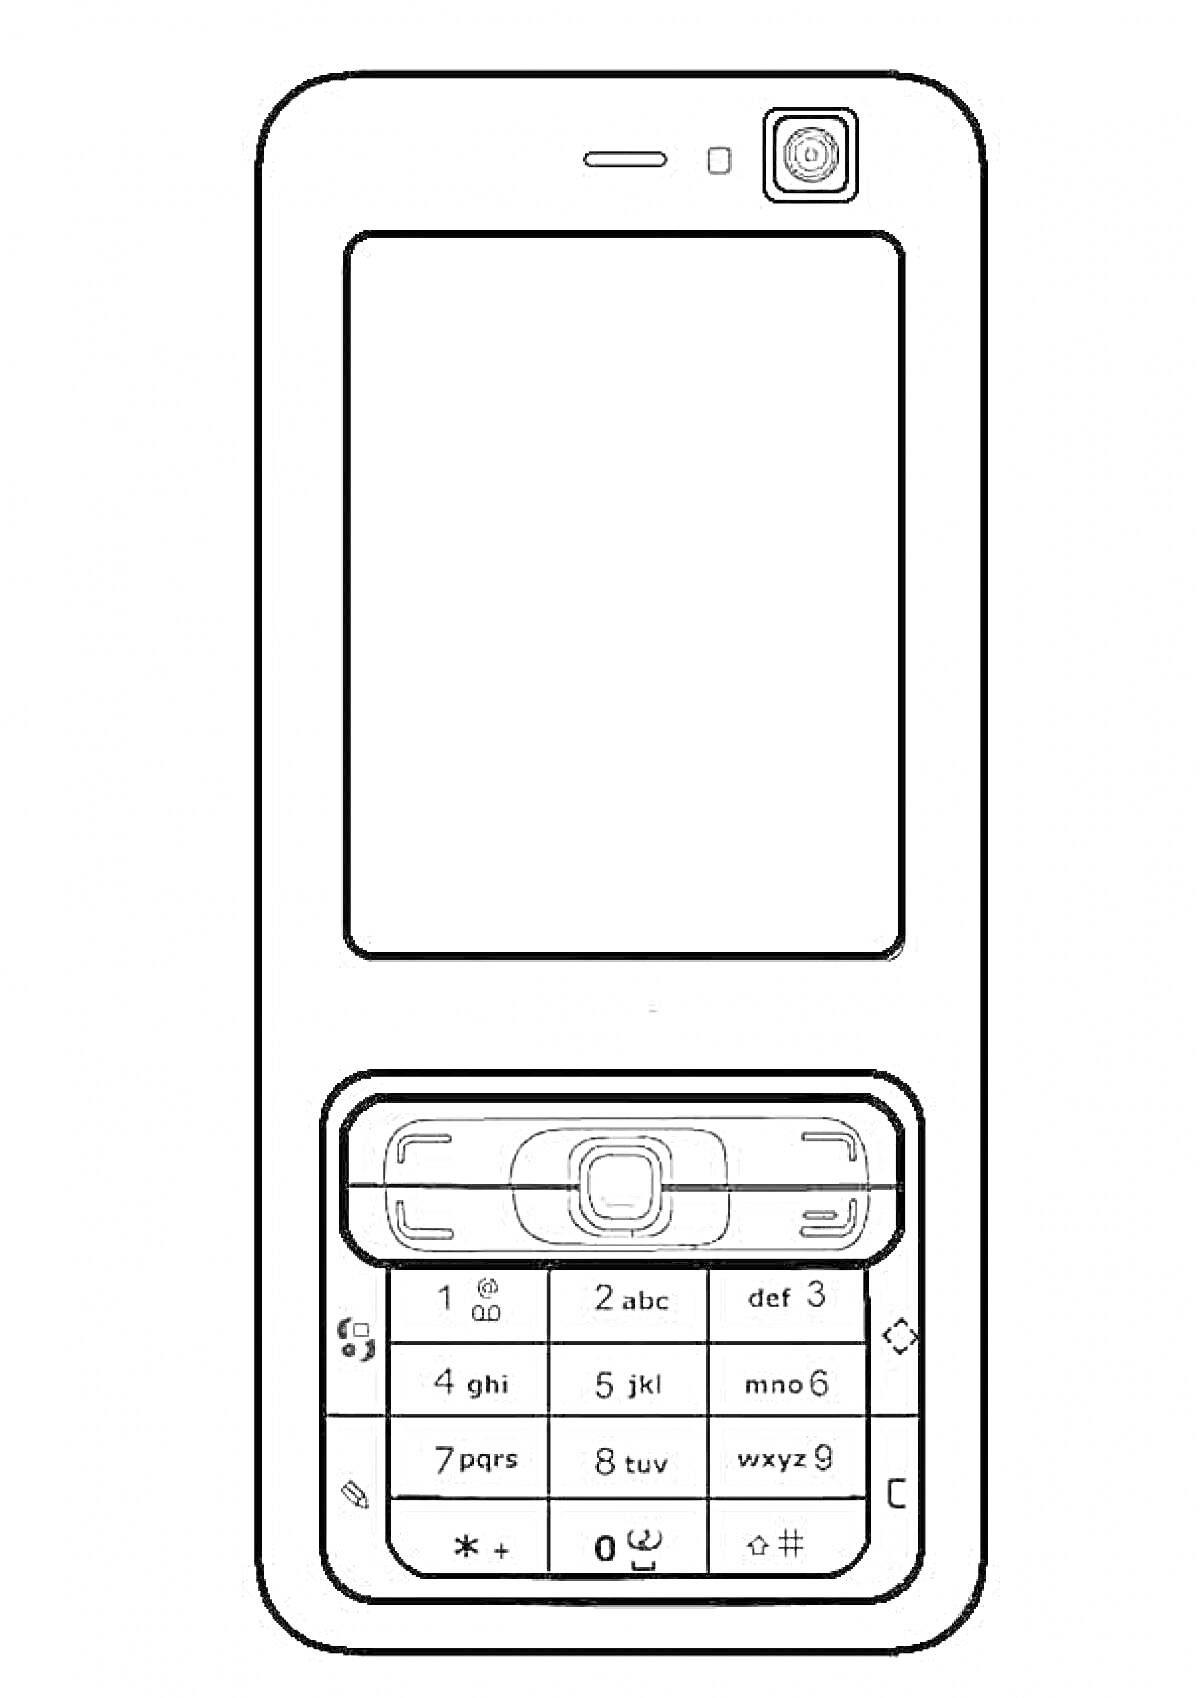 Мобильный телефон с клавиатурой, экраном и камерой